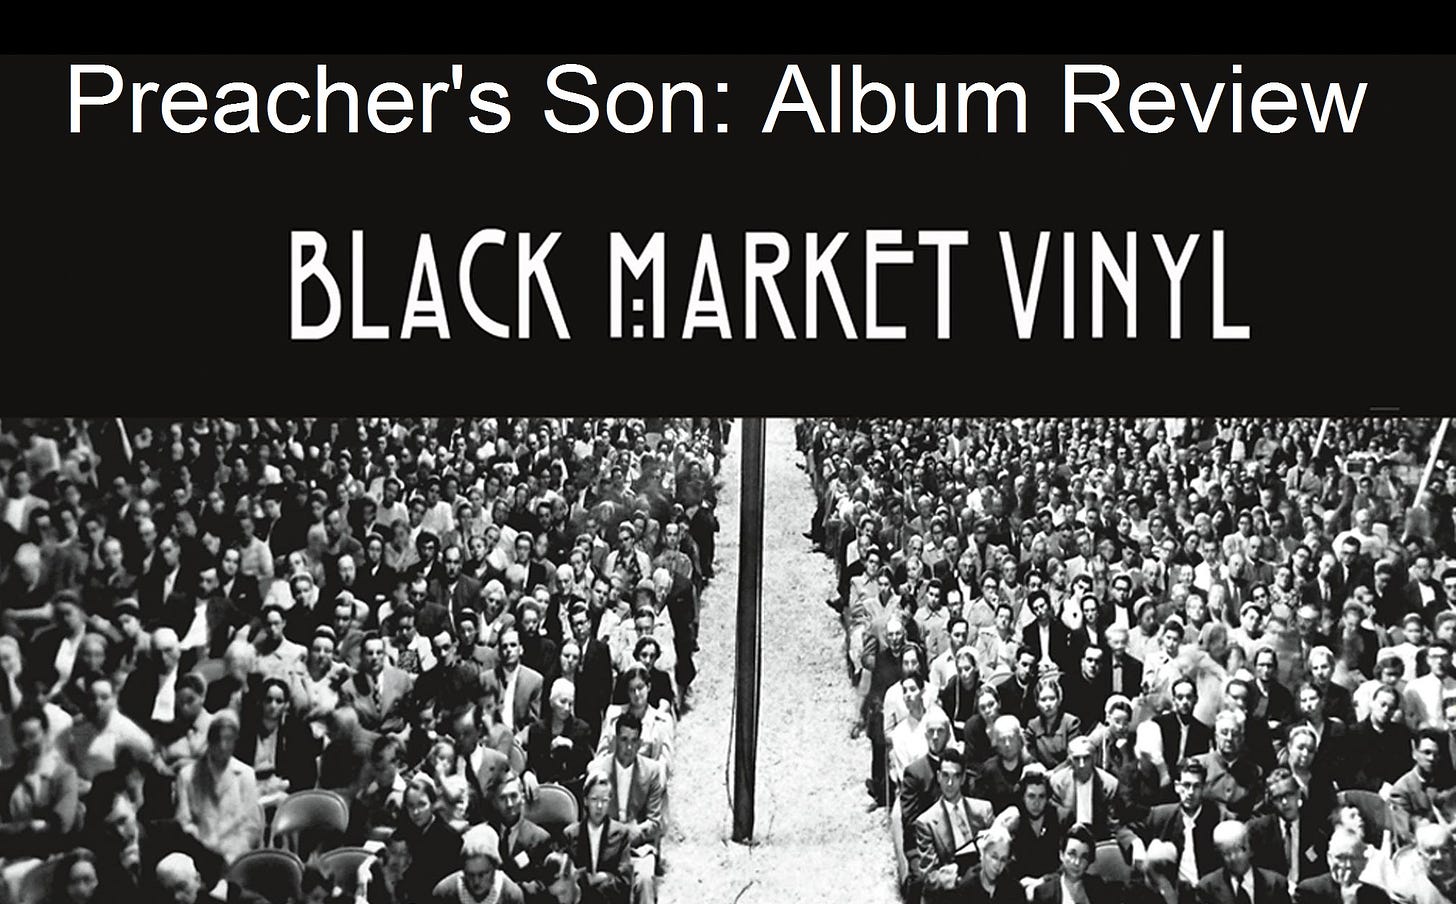 Photo courtesy of Black Market Vinyl.